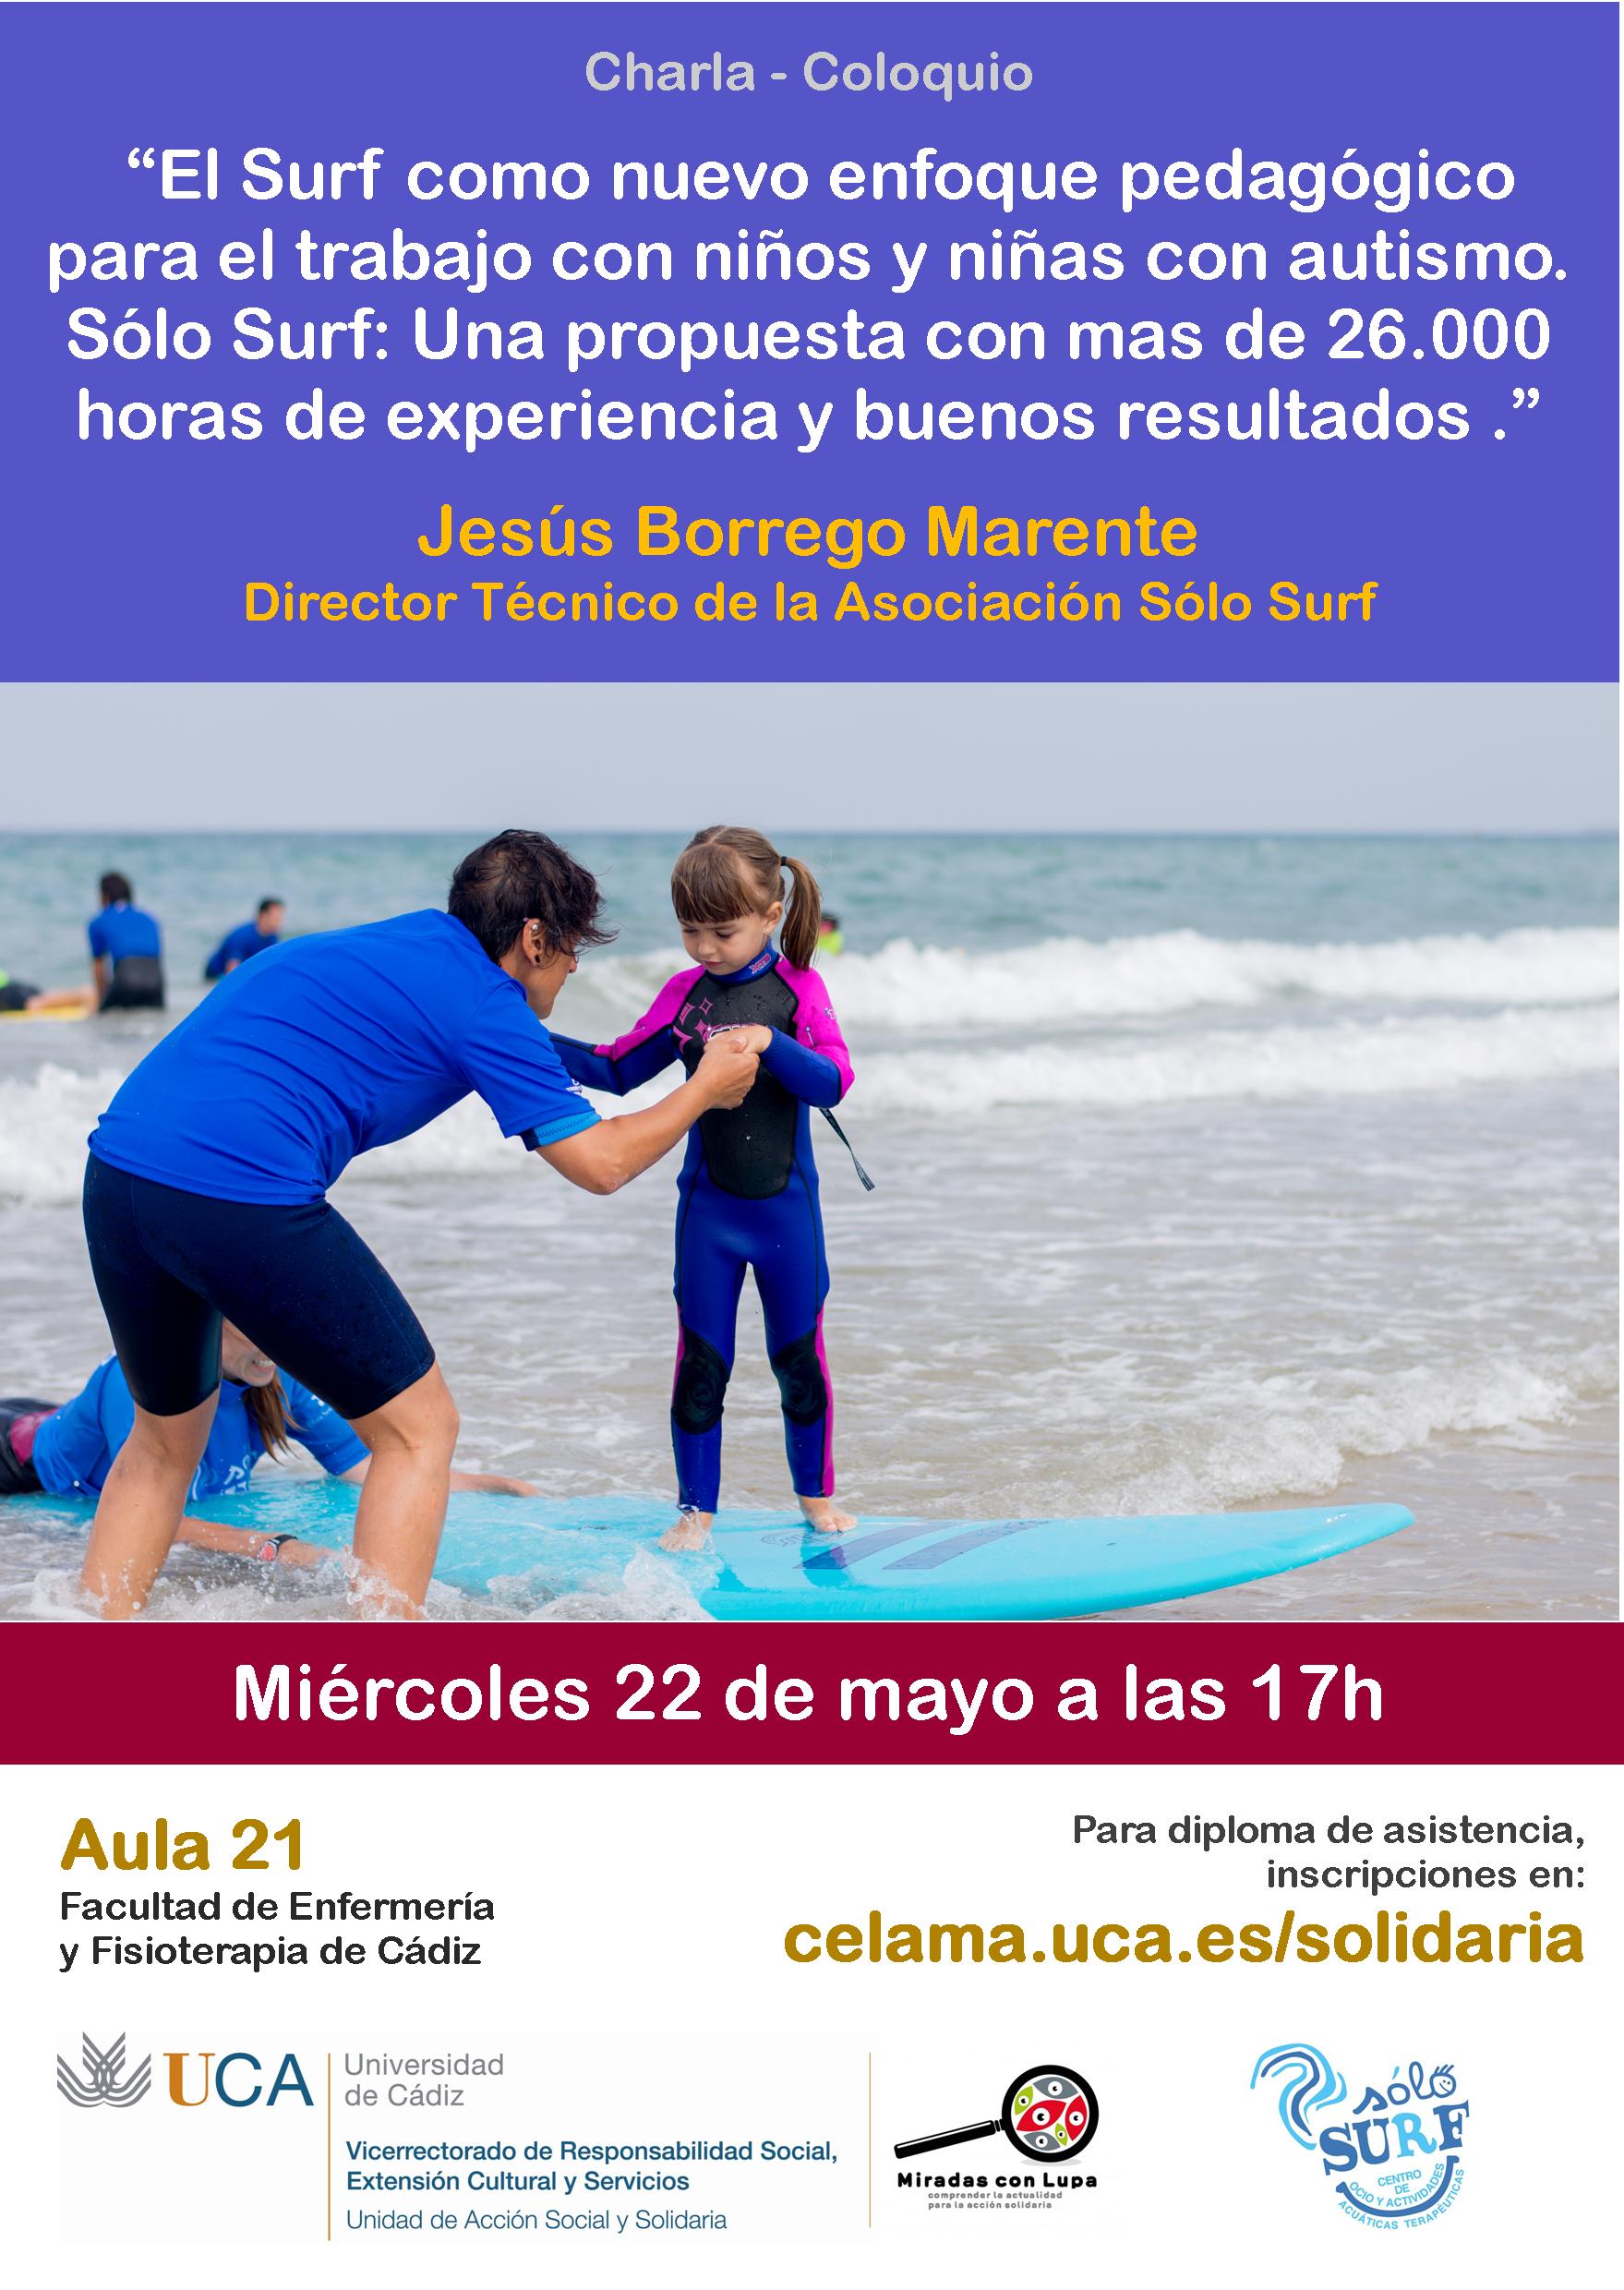 22 de mayo. 17 horas. Charla – coloquio: “El Surf como nuevo enfoque pedagógico para el trabajo con niños y niñas con autismo”.